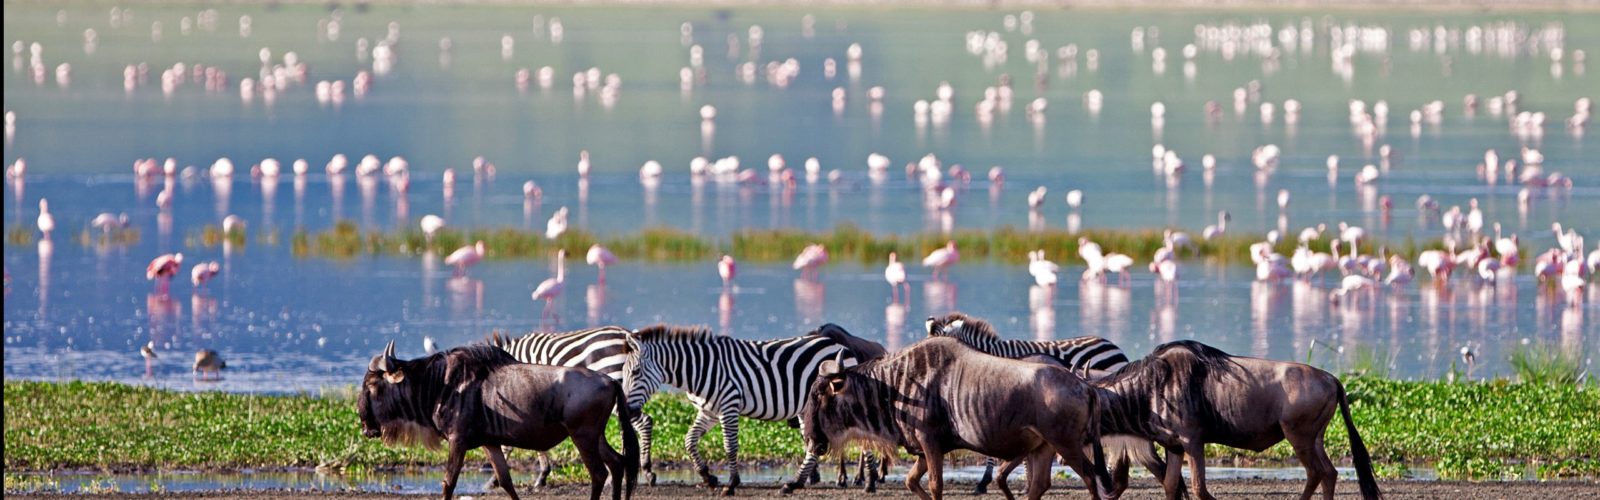 zabras-wildebeest-flamingo-ngorongoro-crater-tanzania